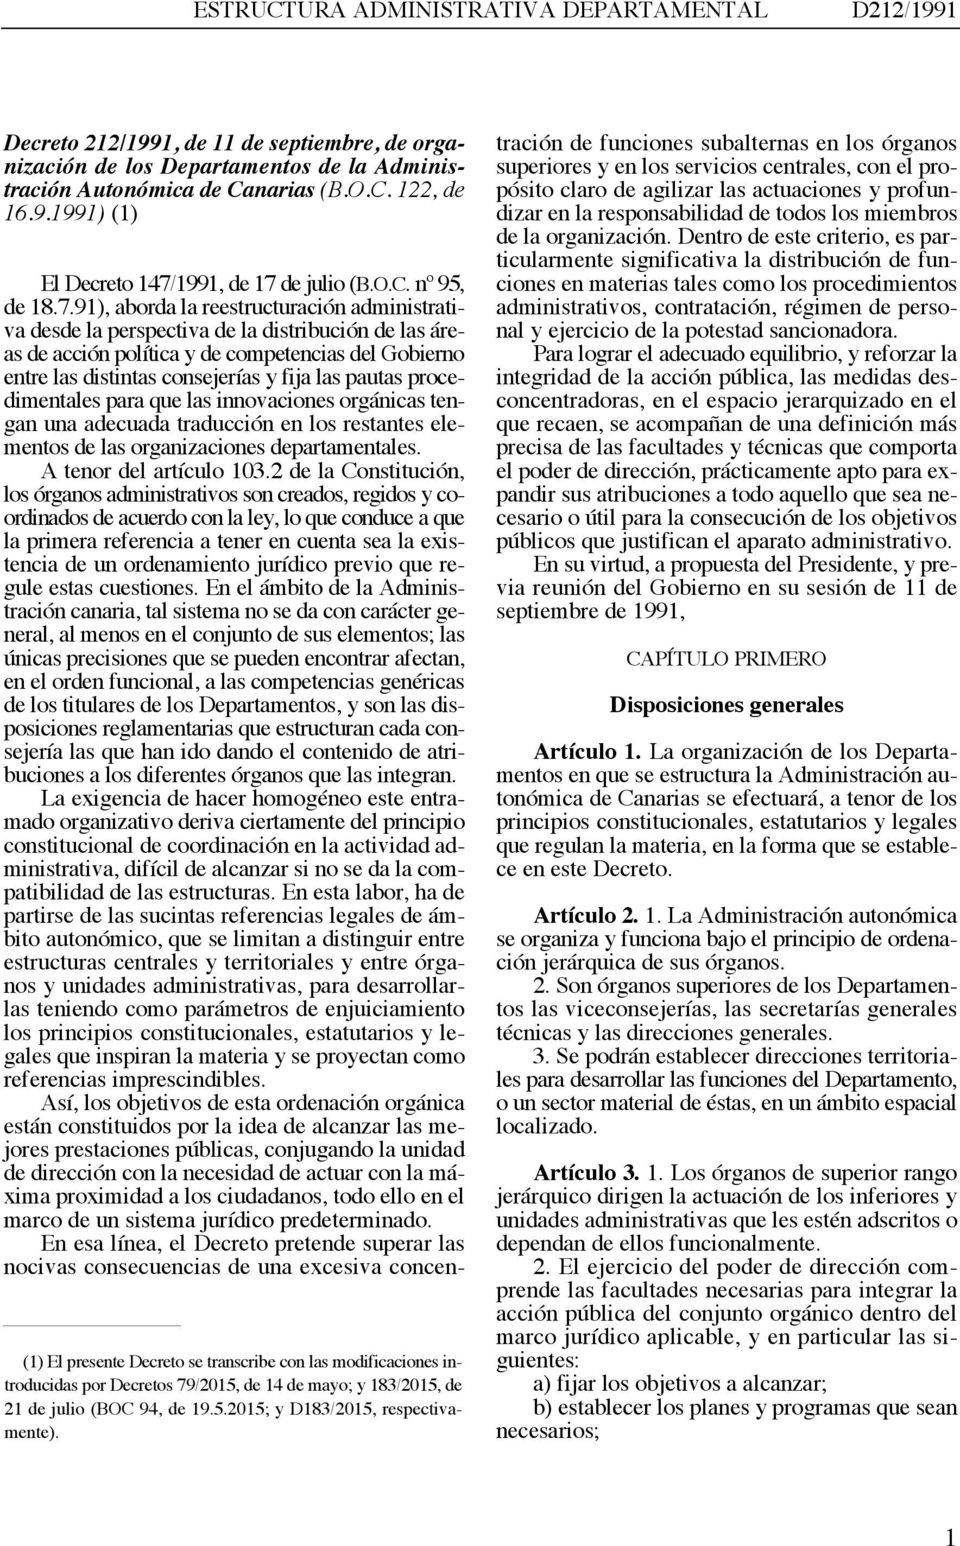 5.2015; y D183/2015, respectivamente). El Decreto 147/